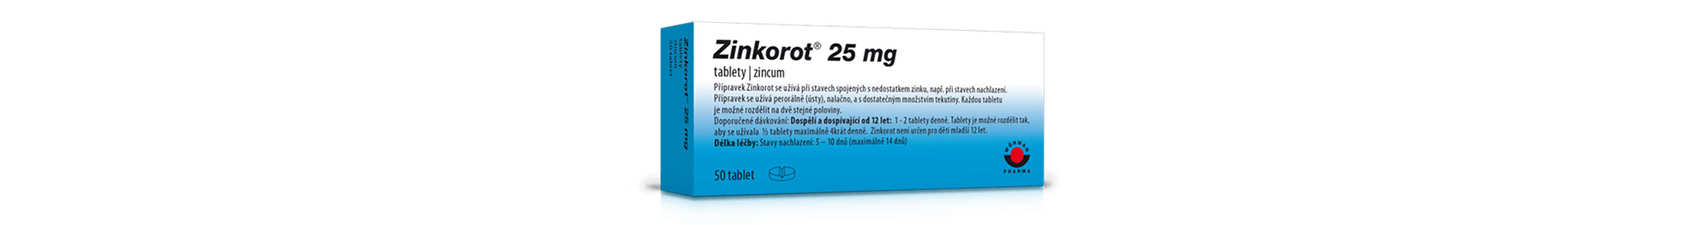 Zinek - zinkorot tablety, pro děti, dávkovanie, nedostatek zinku, účinky, maximální denní dávka